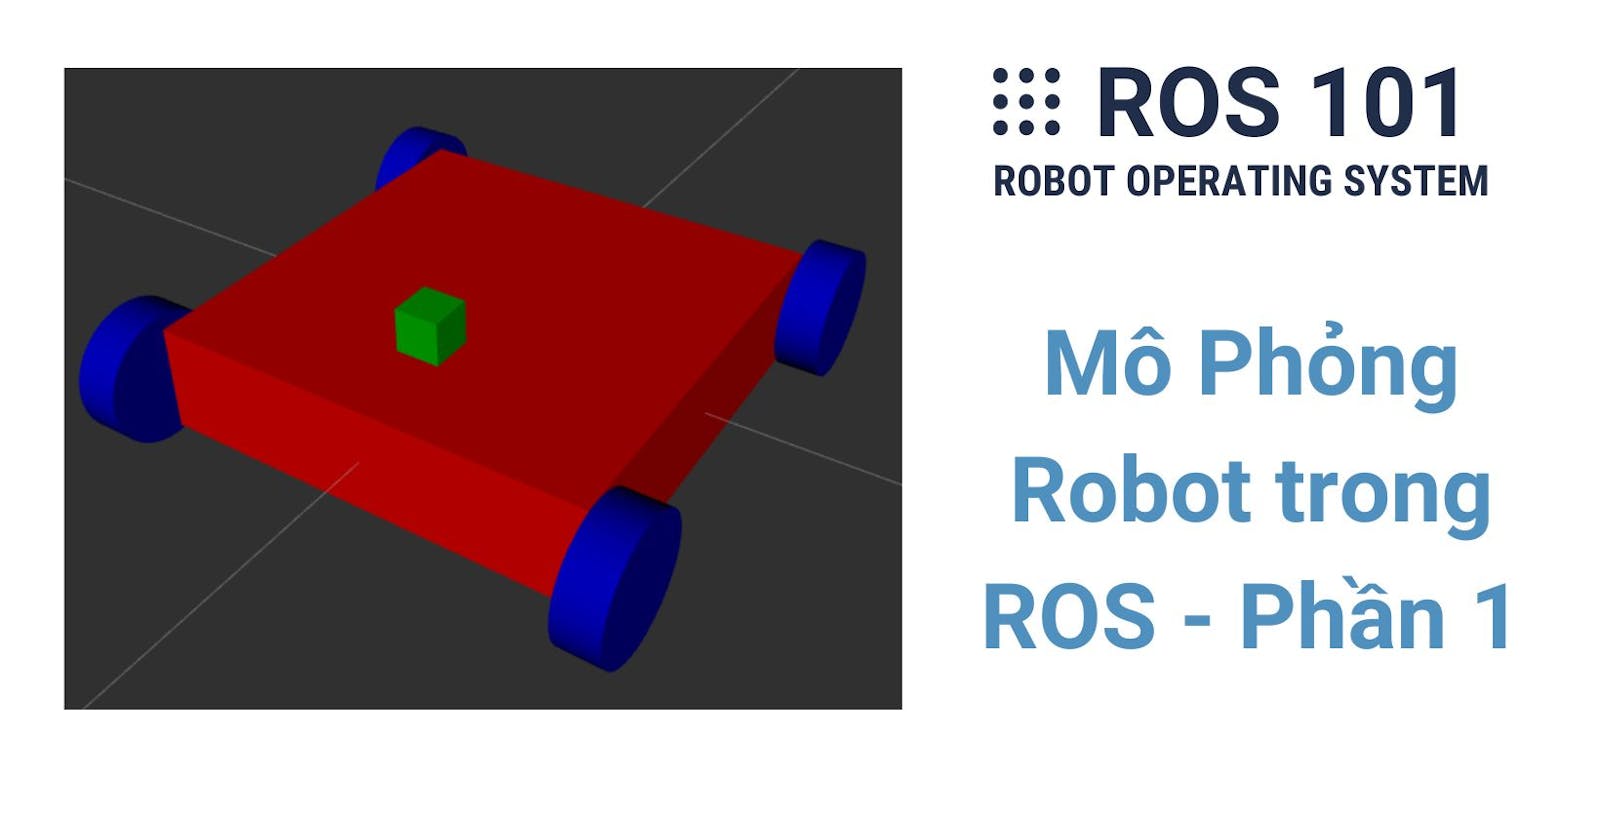 10. Mô Phỏng Robot trong ROS - Phần 1